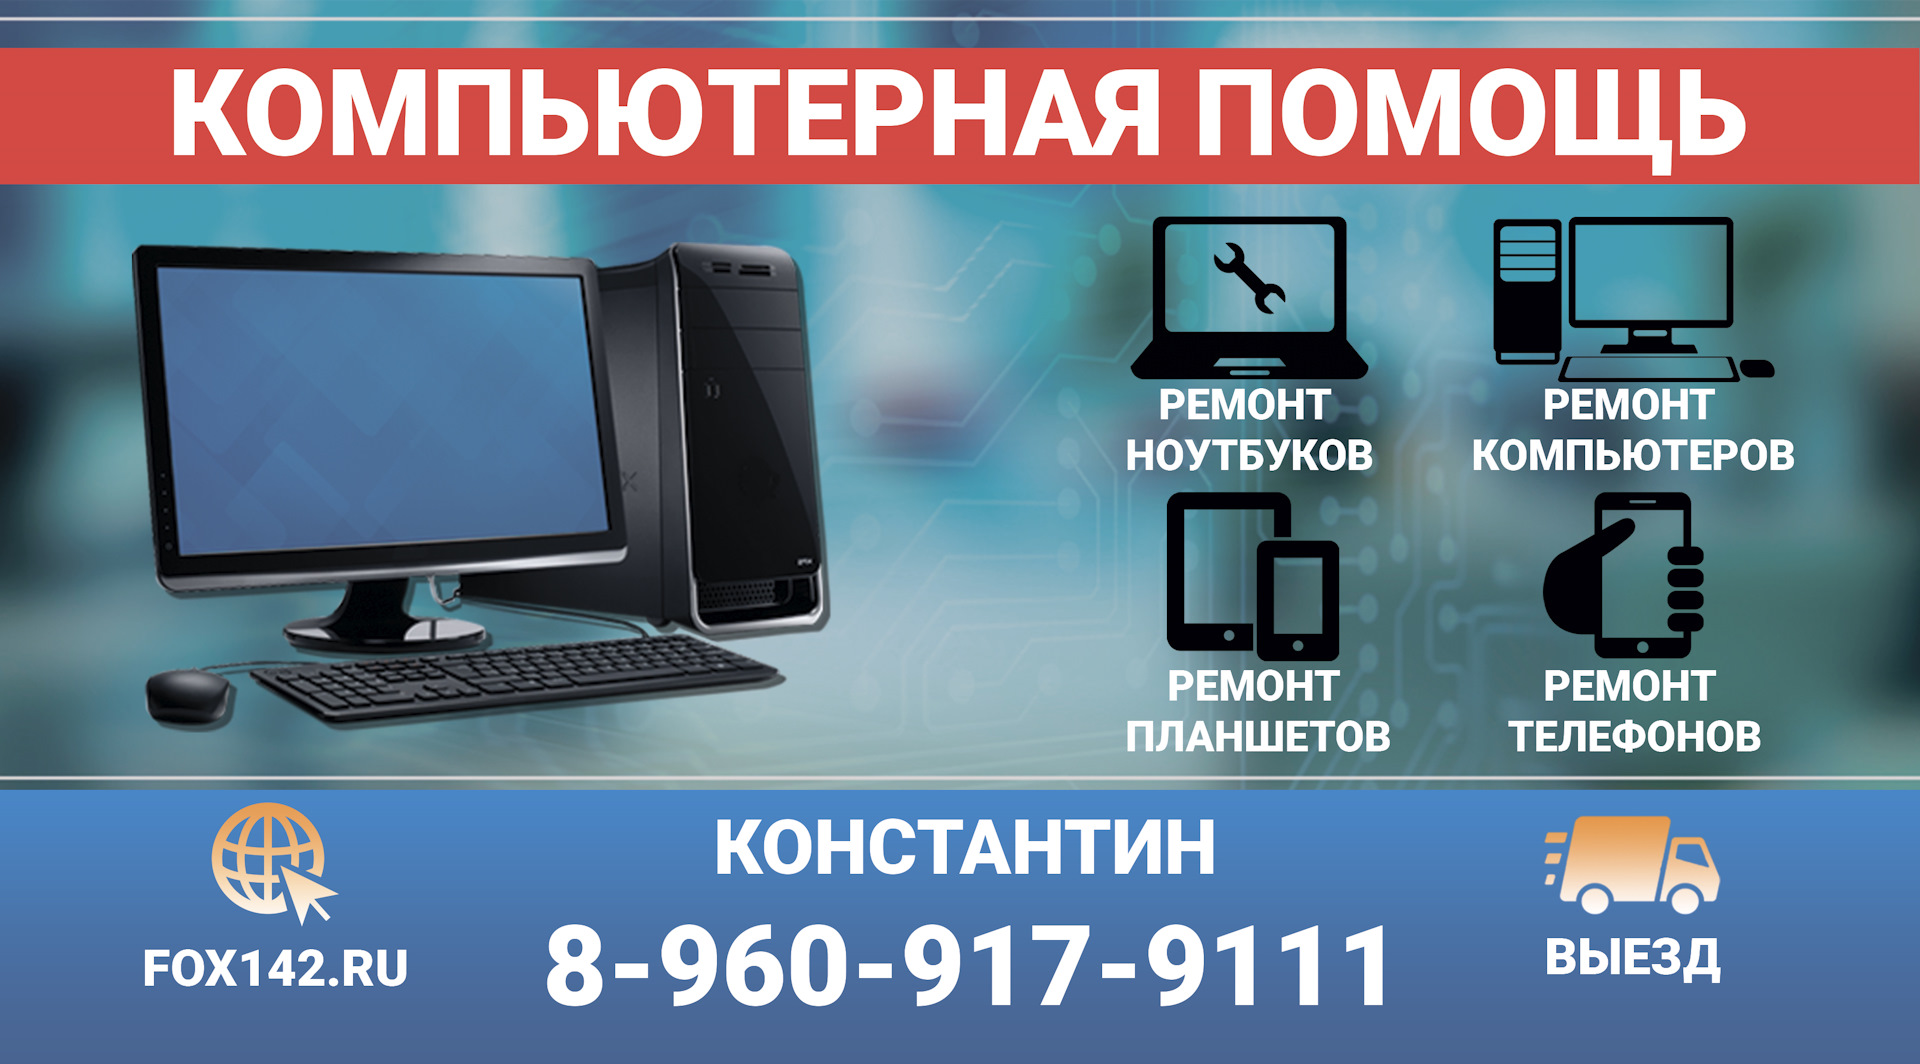 Реклама компьютерного сервисного центра